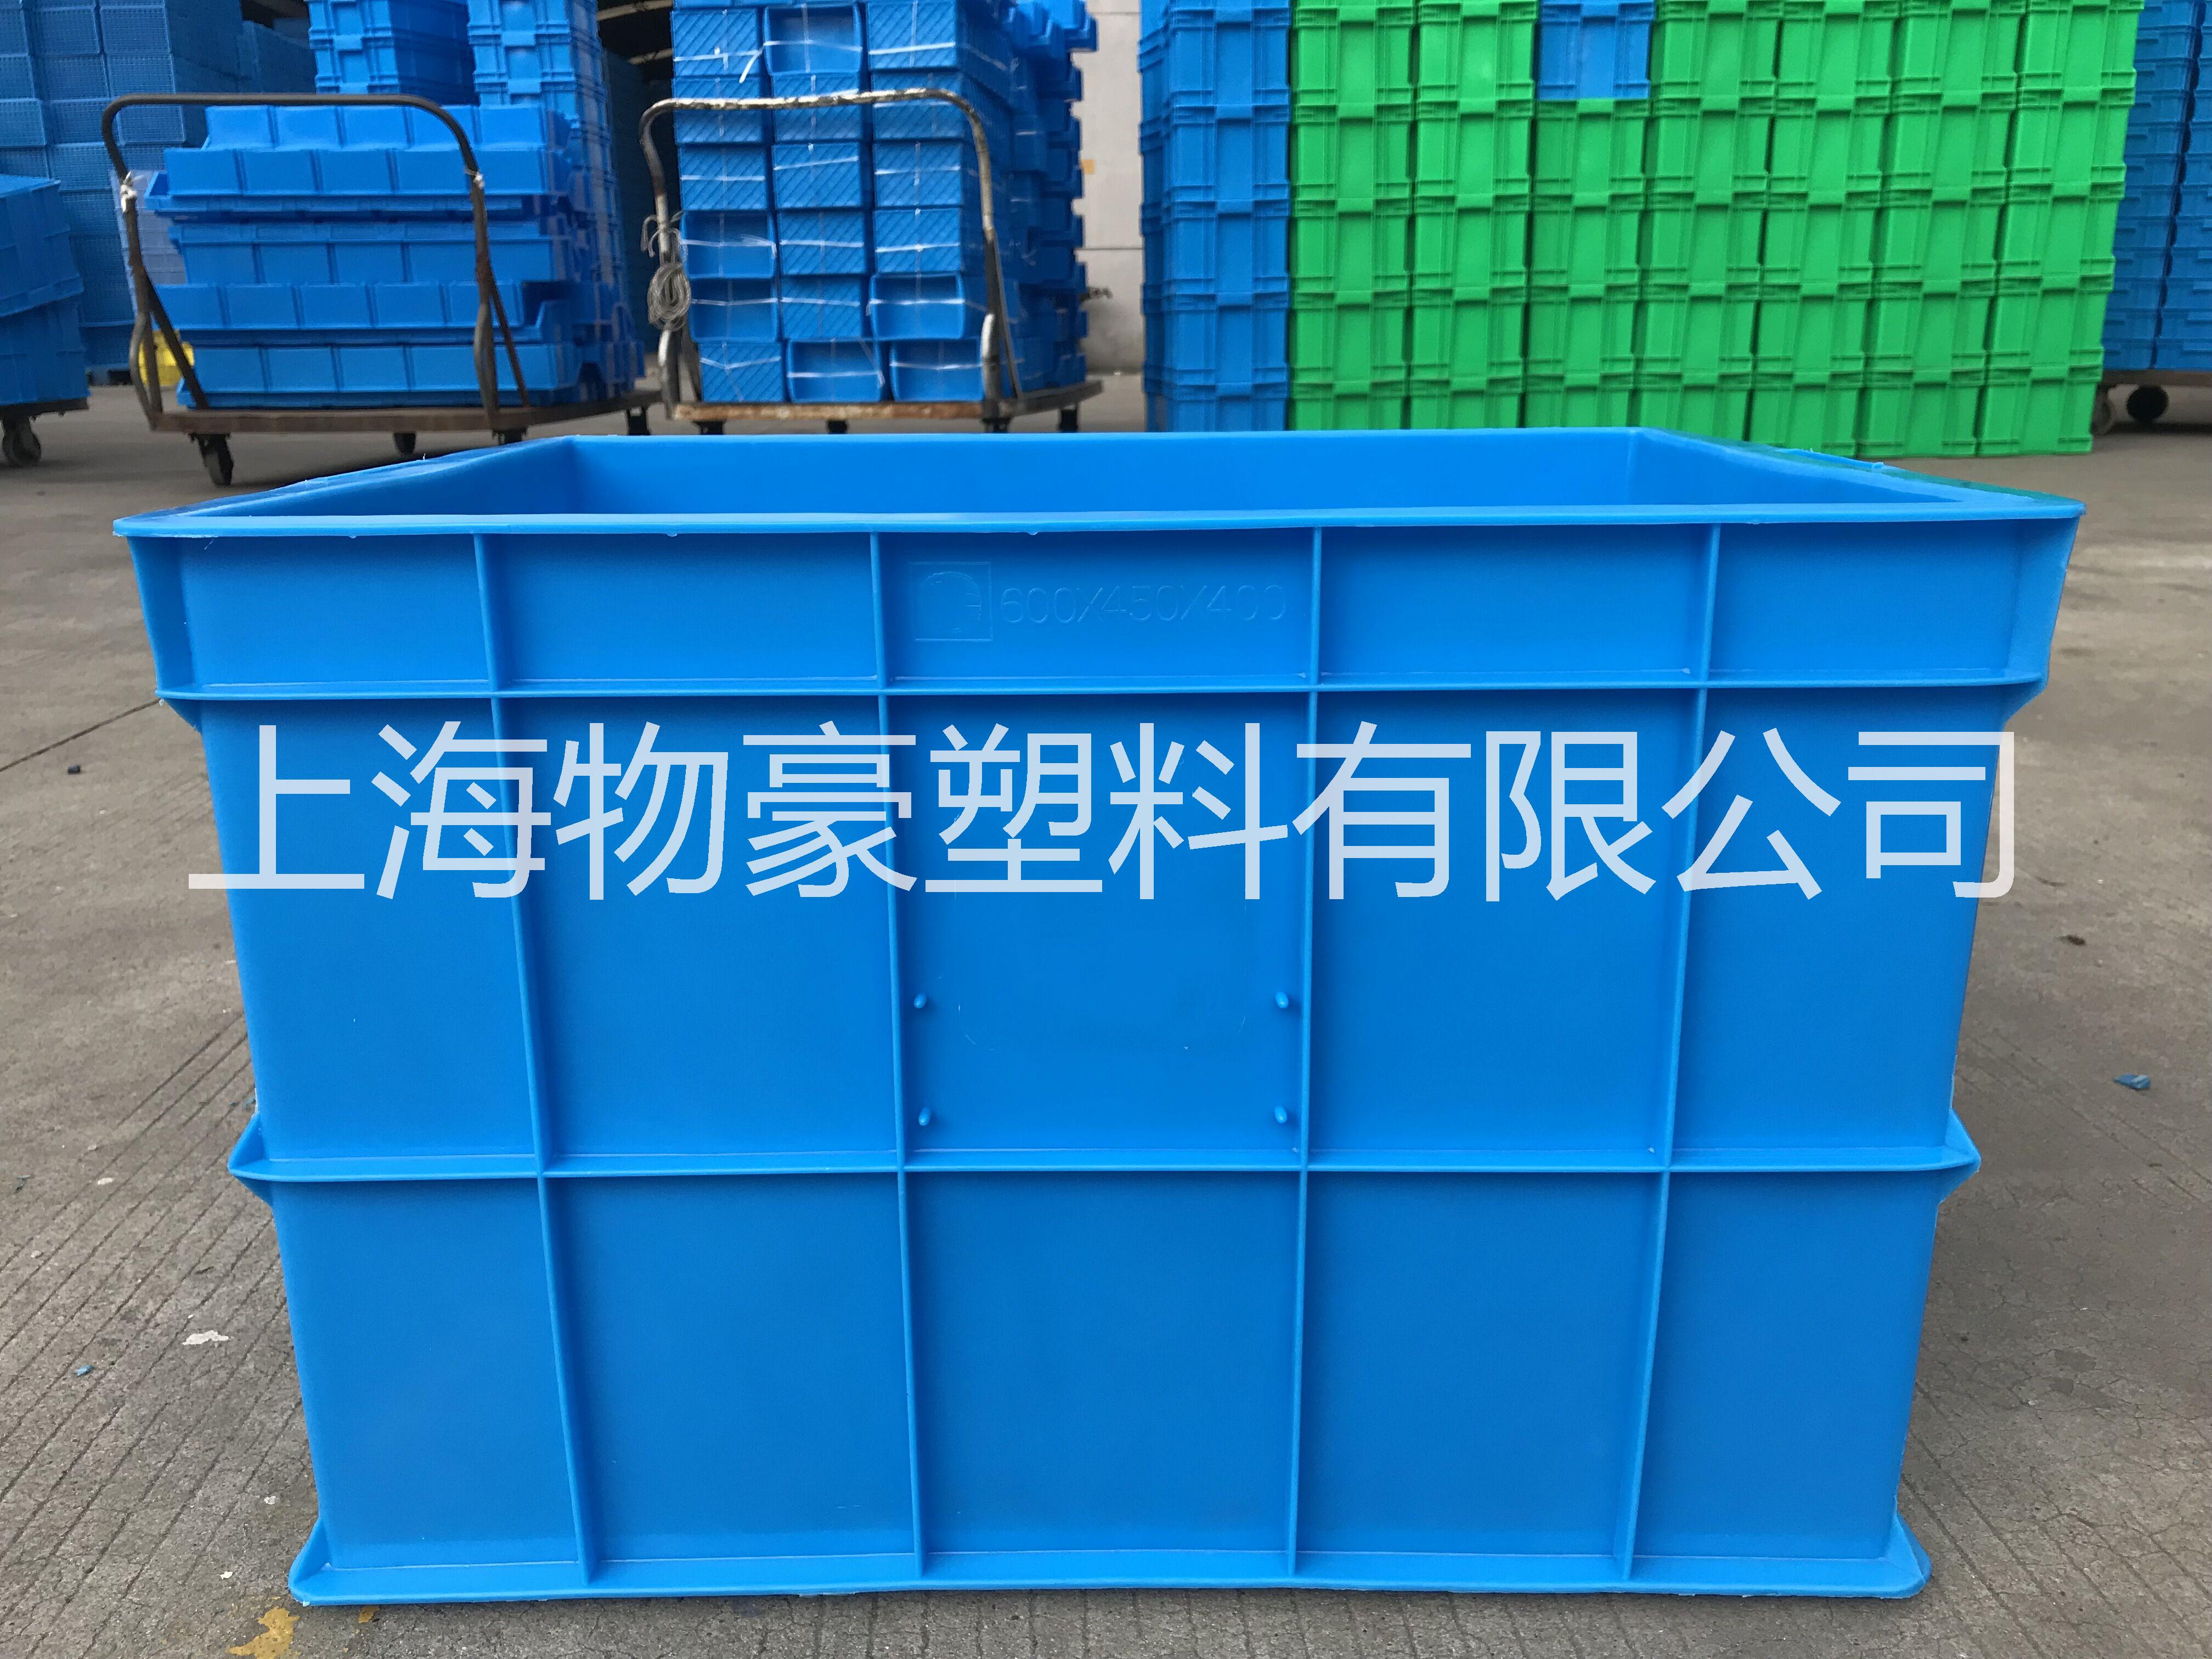 塑料周转箱|上海塑料箱厂报价表|上海塑料箱批发价格|上海塑料箱厂家直销 食品级塑料周转箱 全新料塑料周转箱